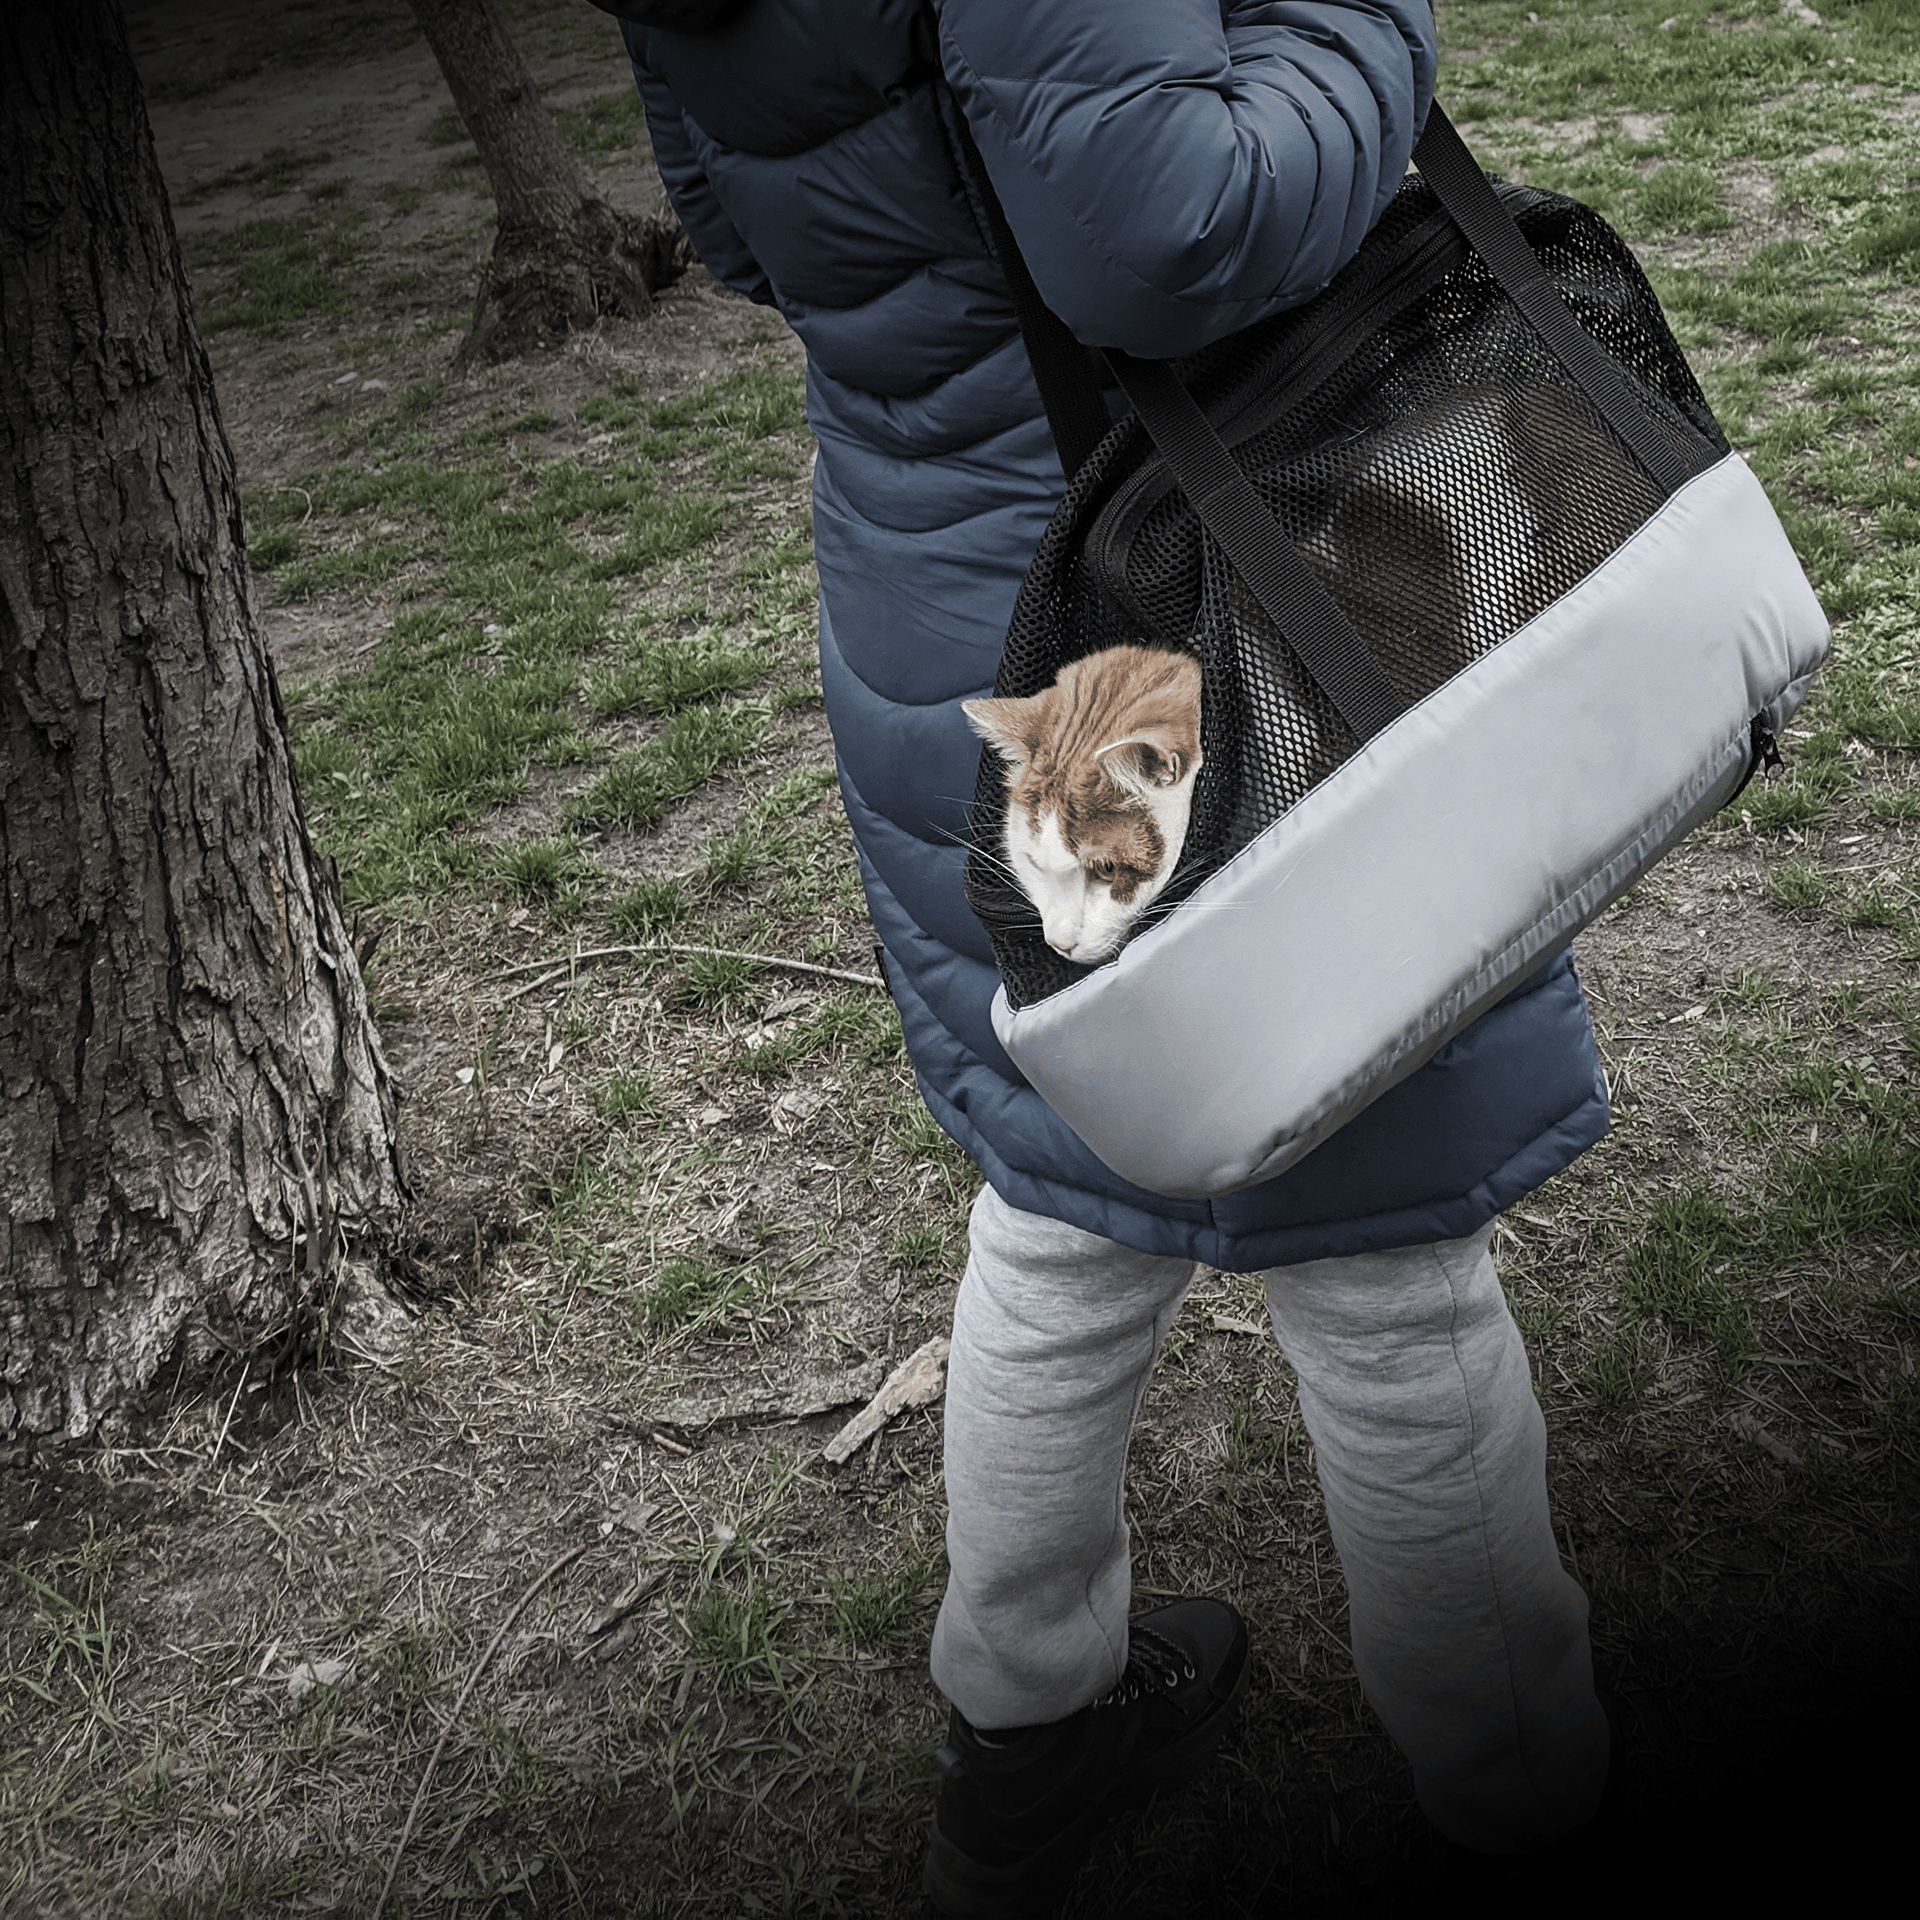 Kot schowany w torbie